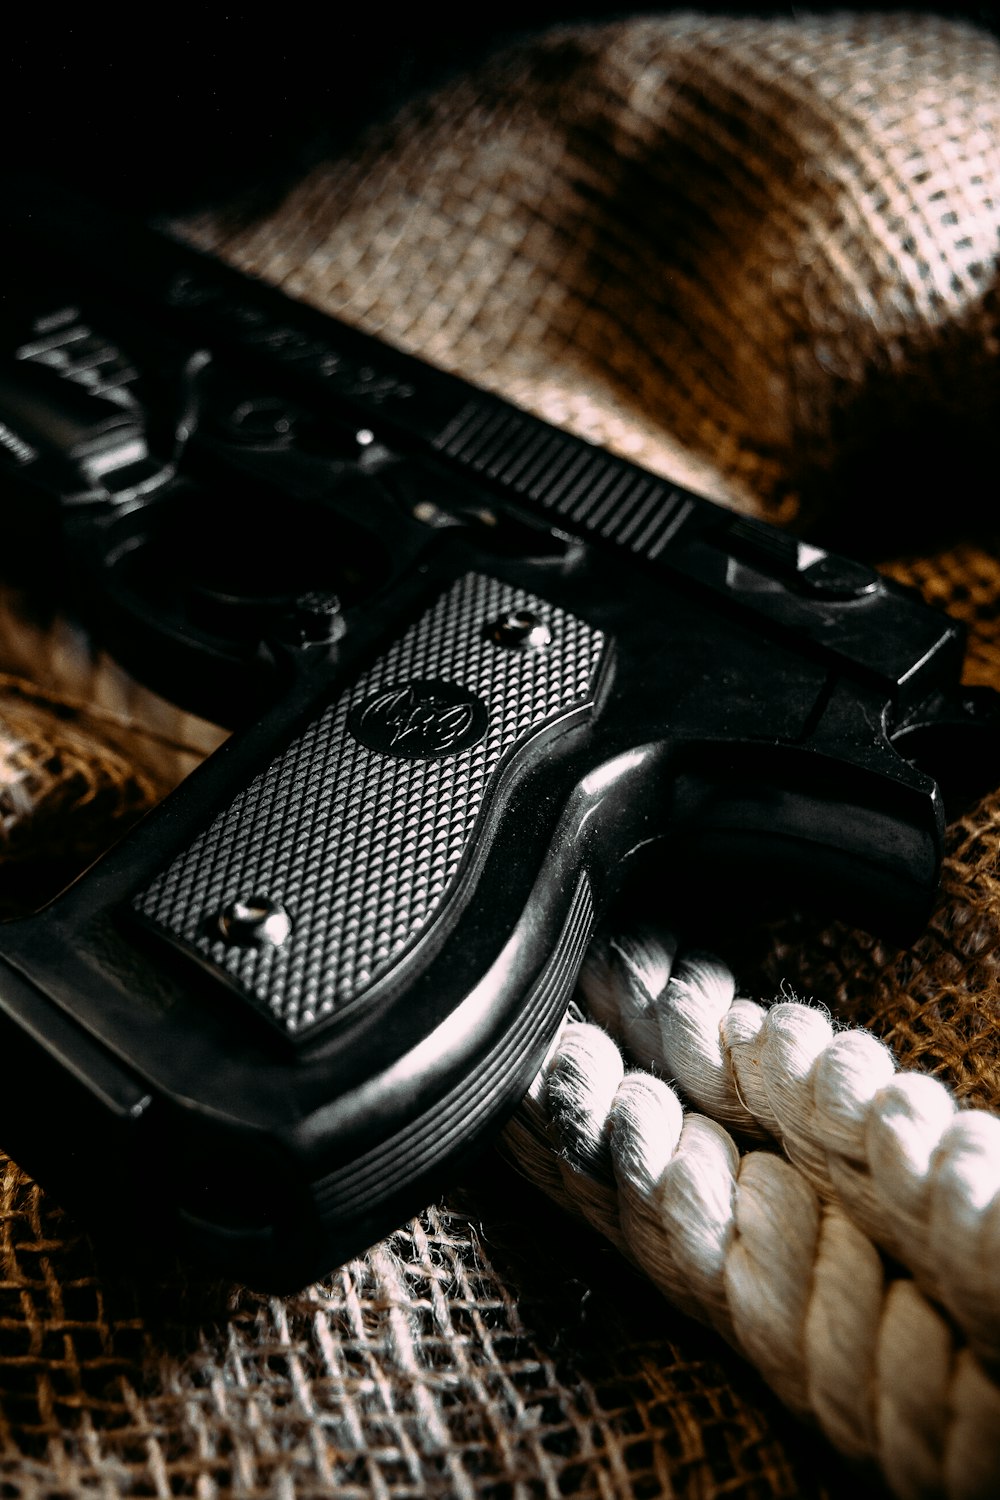 Pistolet semi-automatique noir sur textile marron